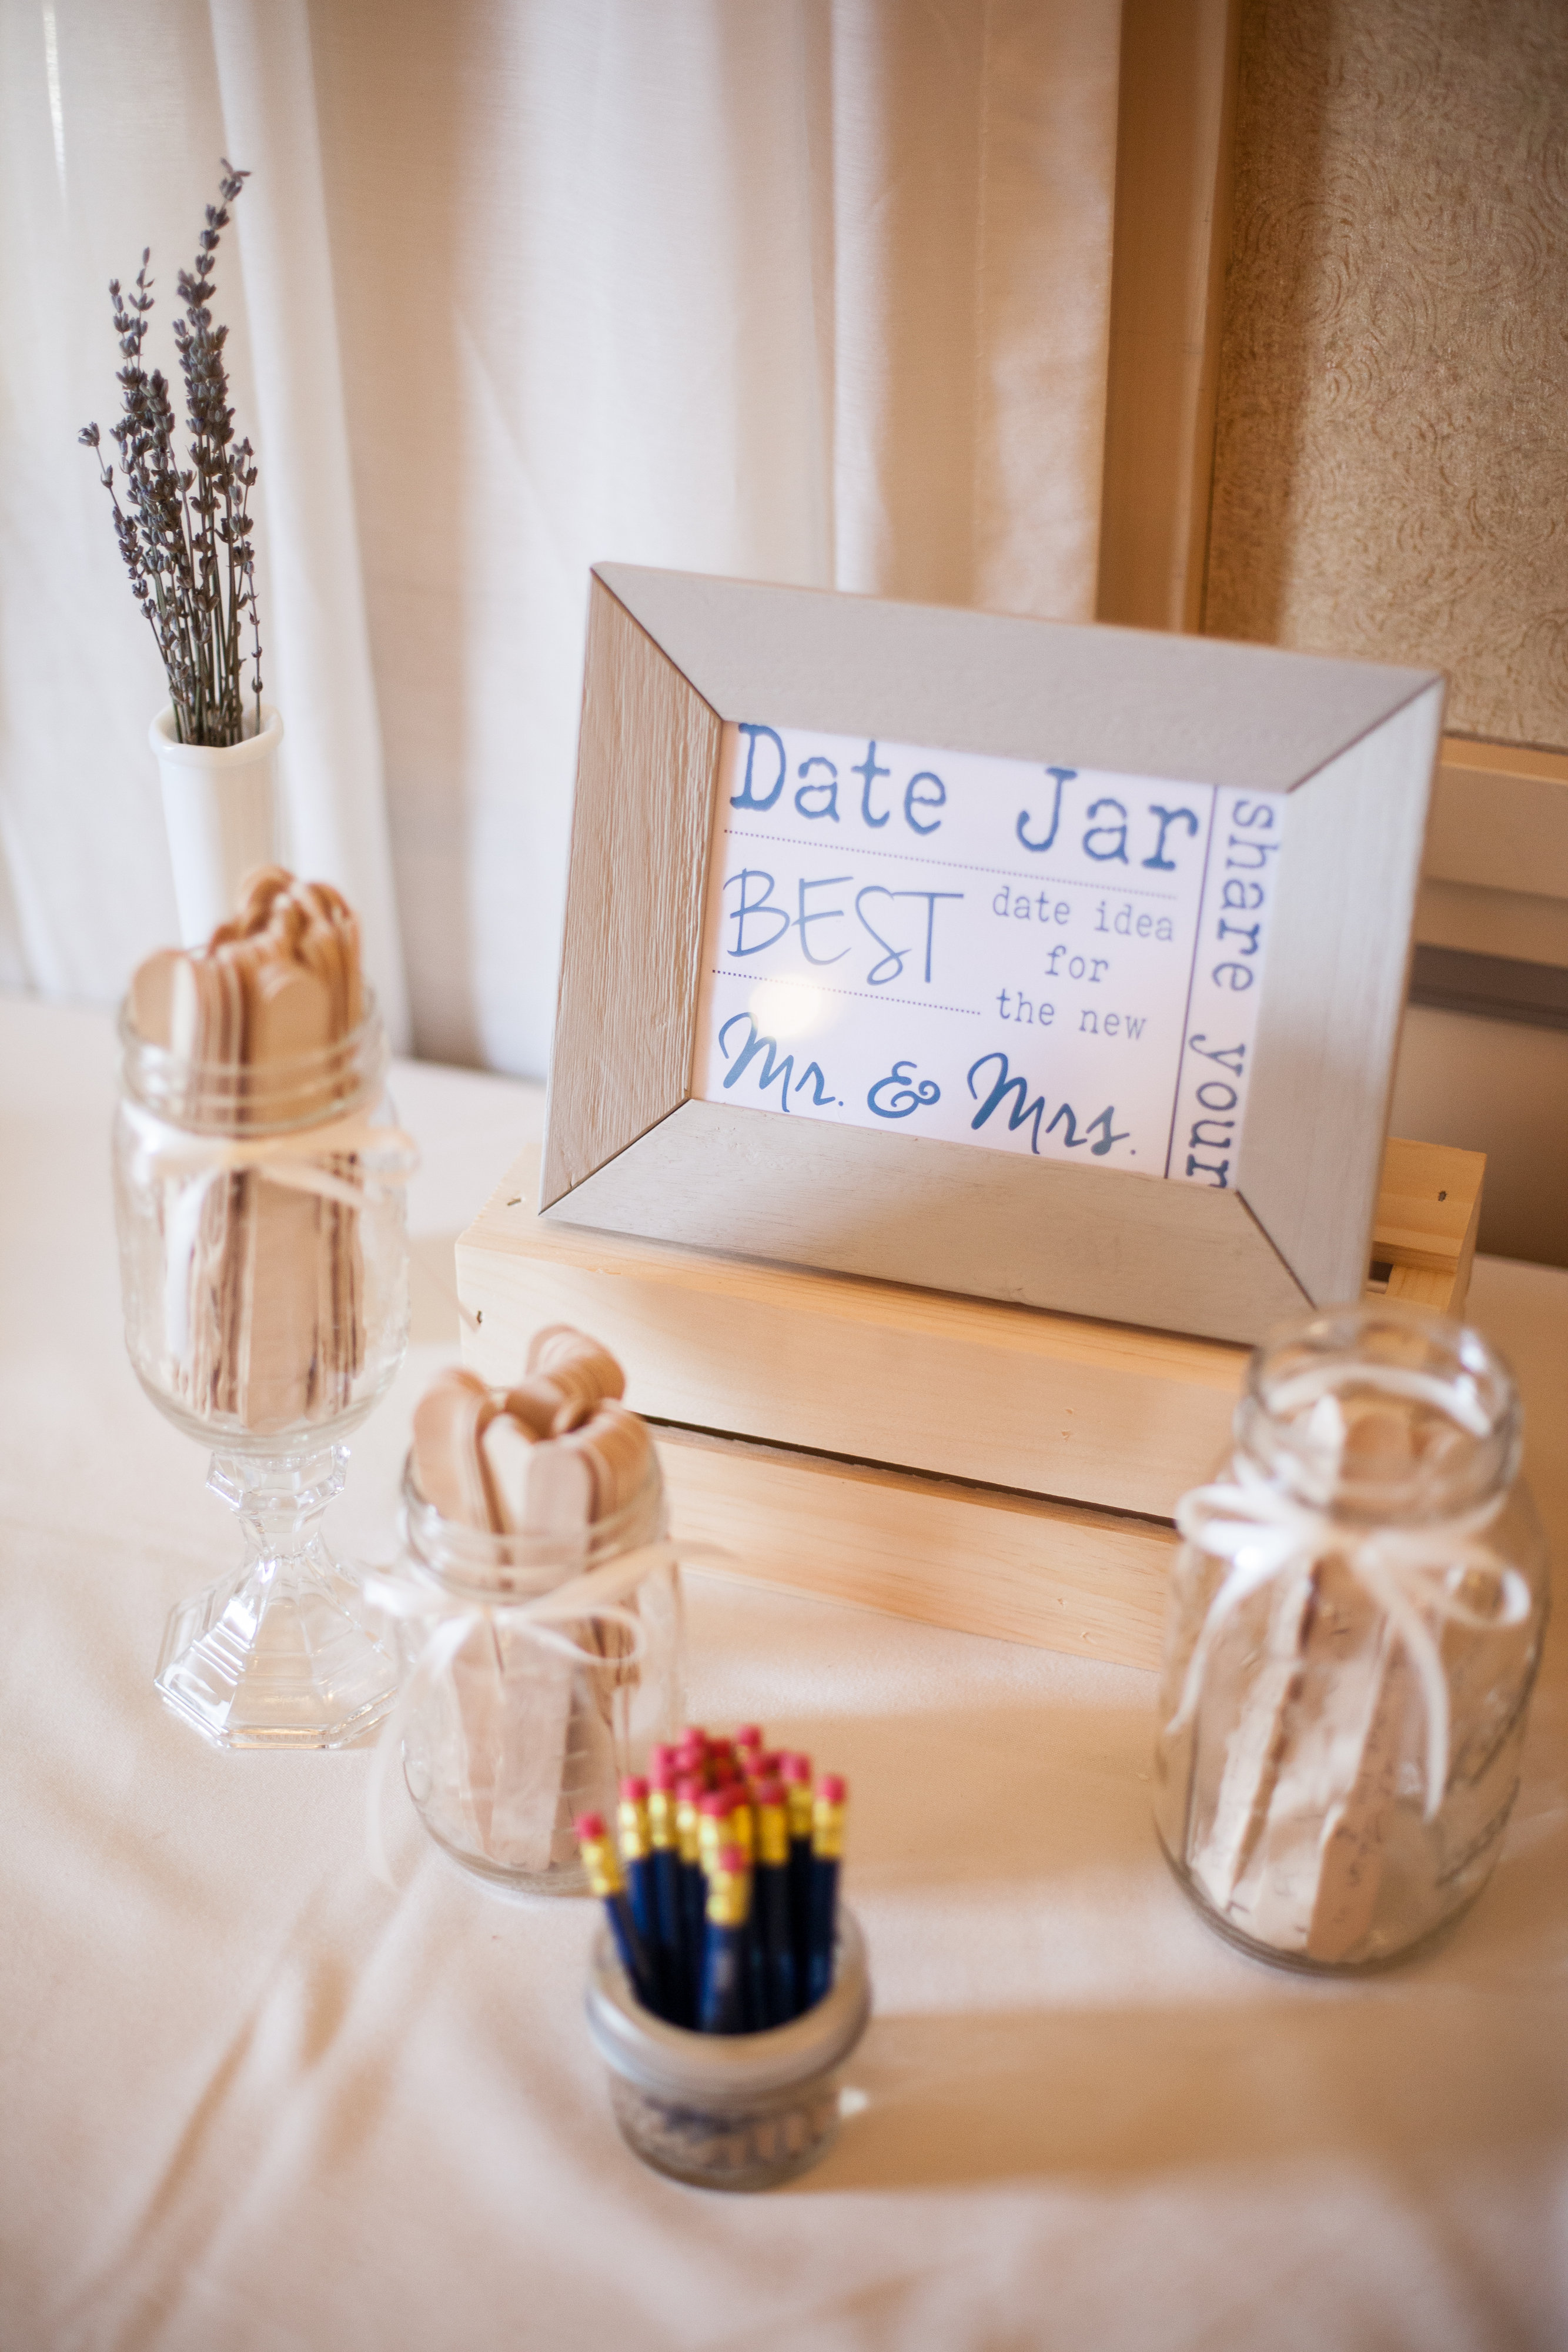 Date jar for wedding reception